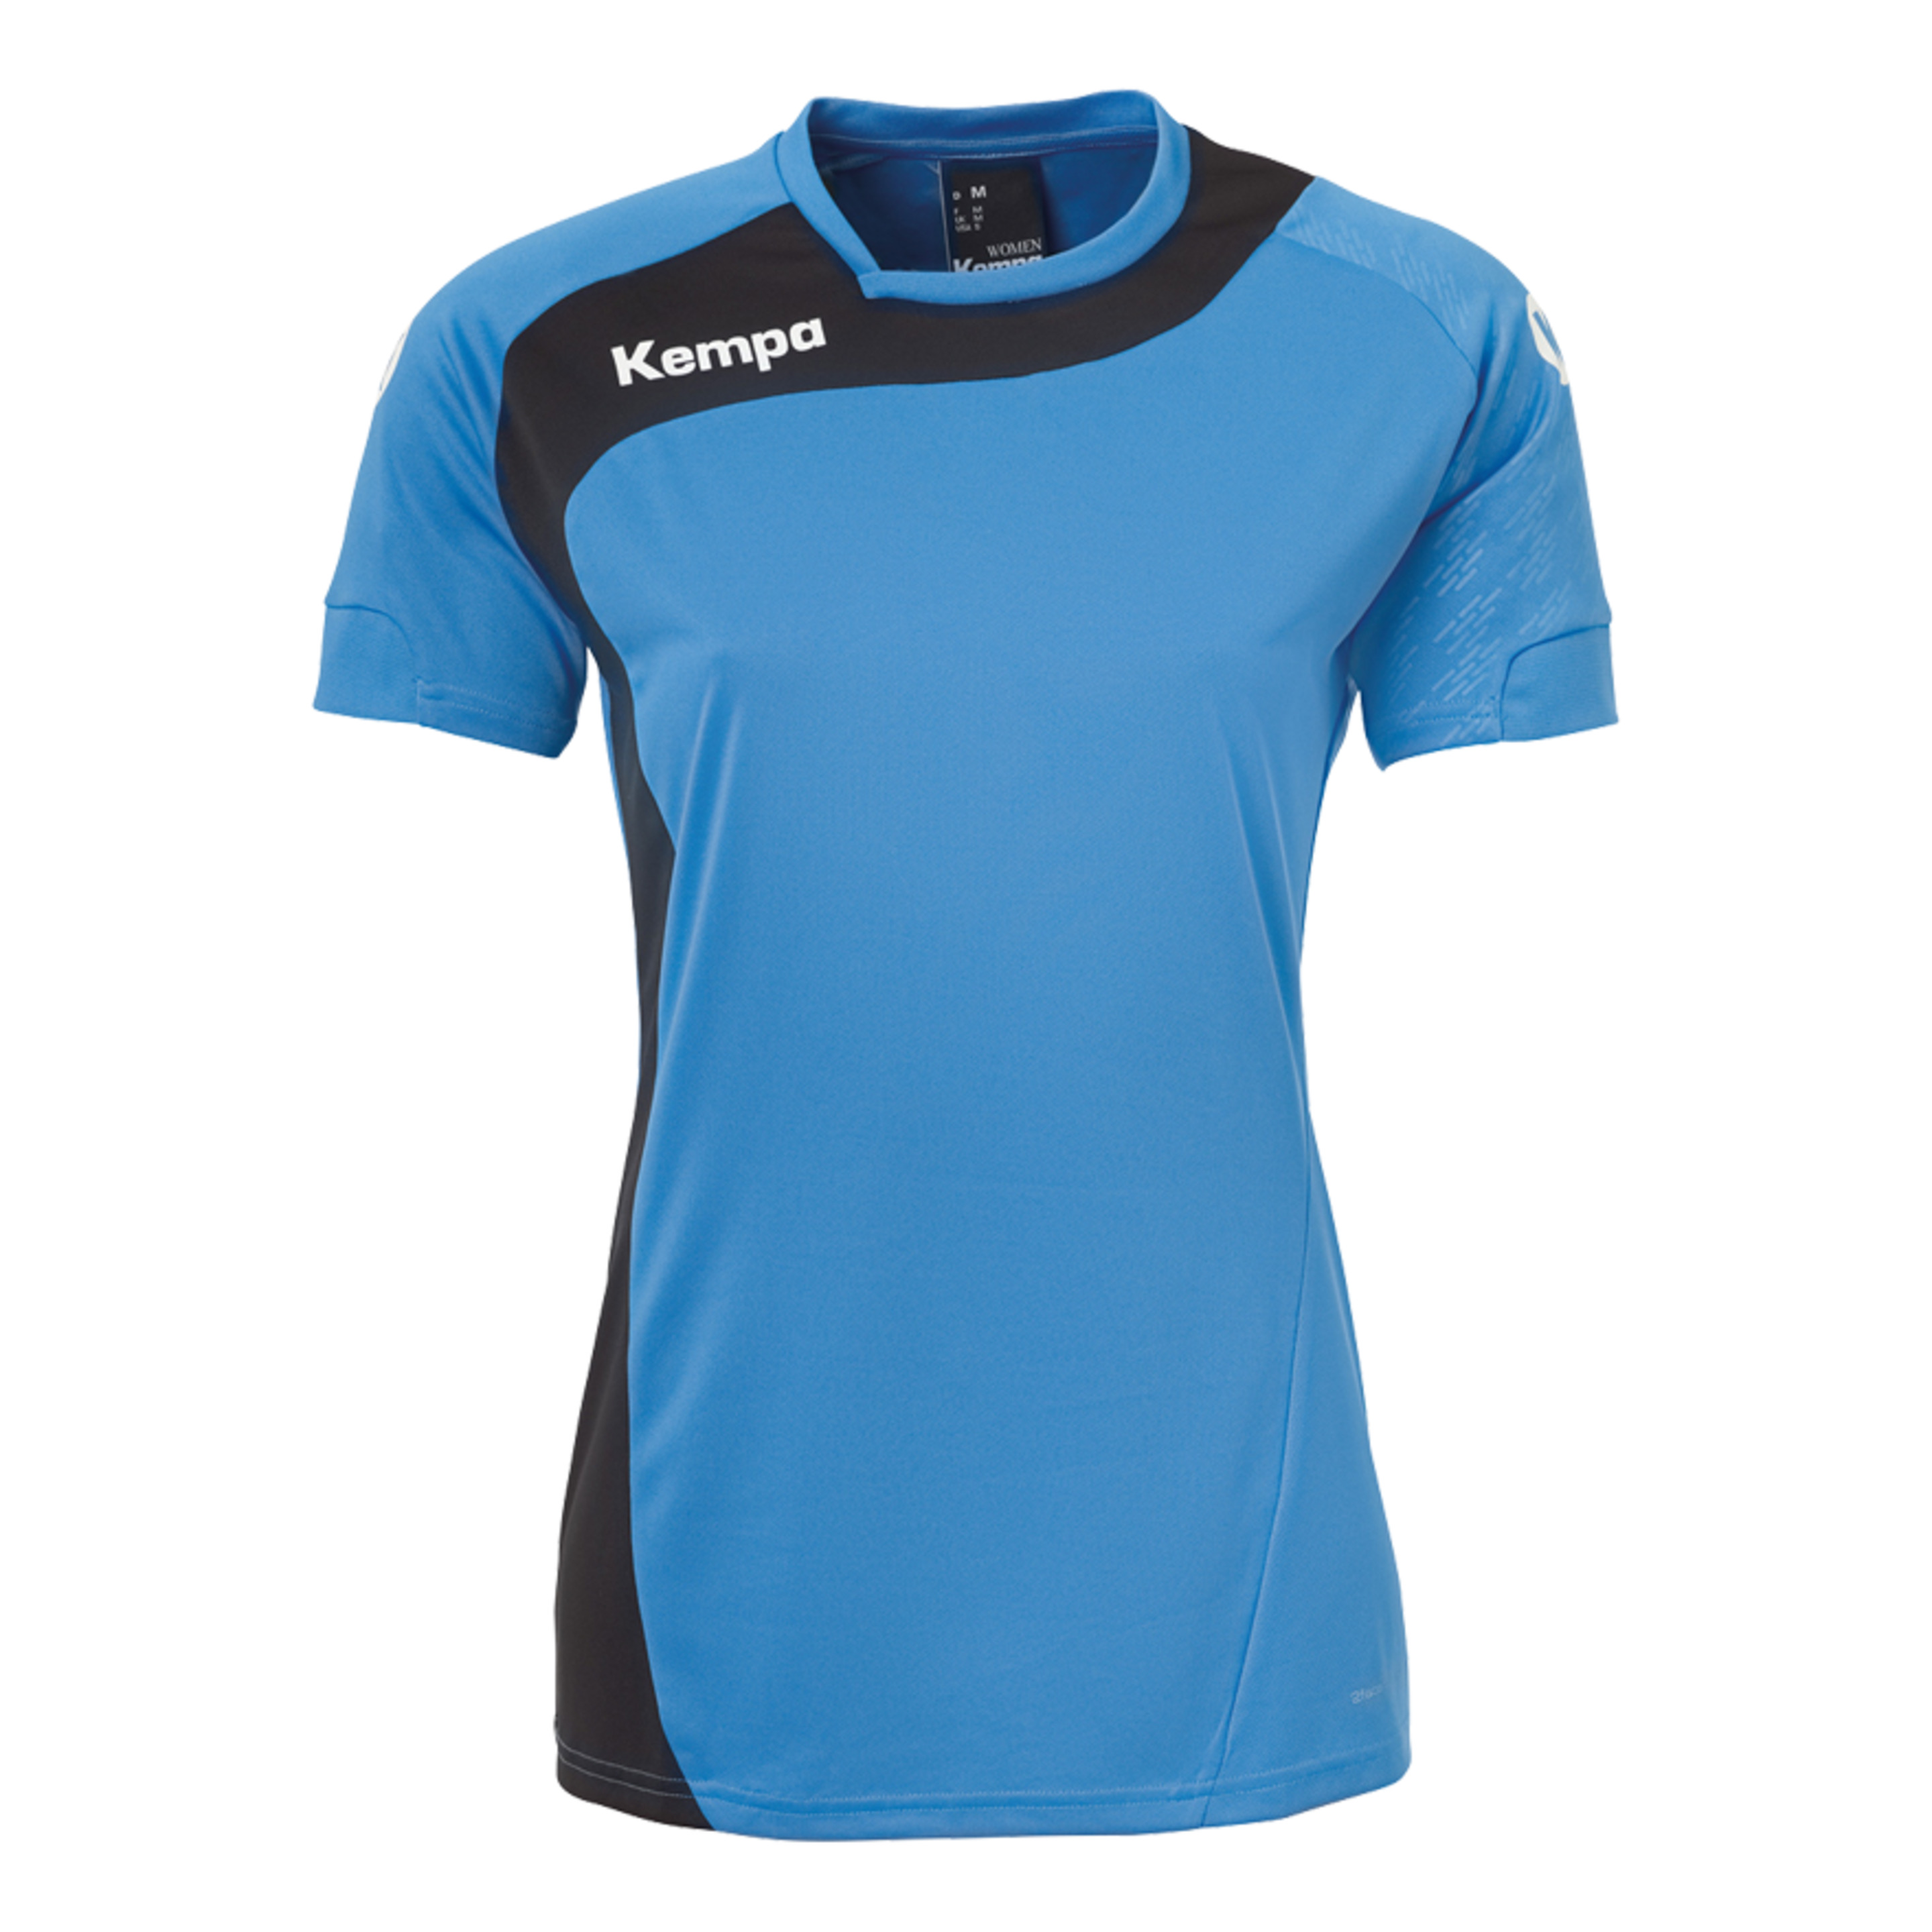 Peak Camiseta De Mujer Kempa Azul/negro Kempa